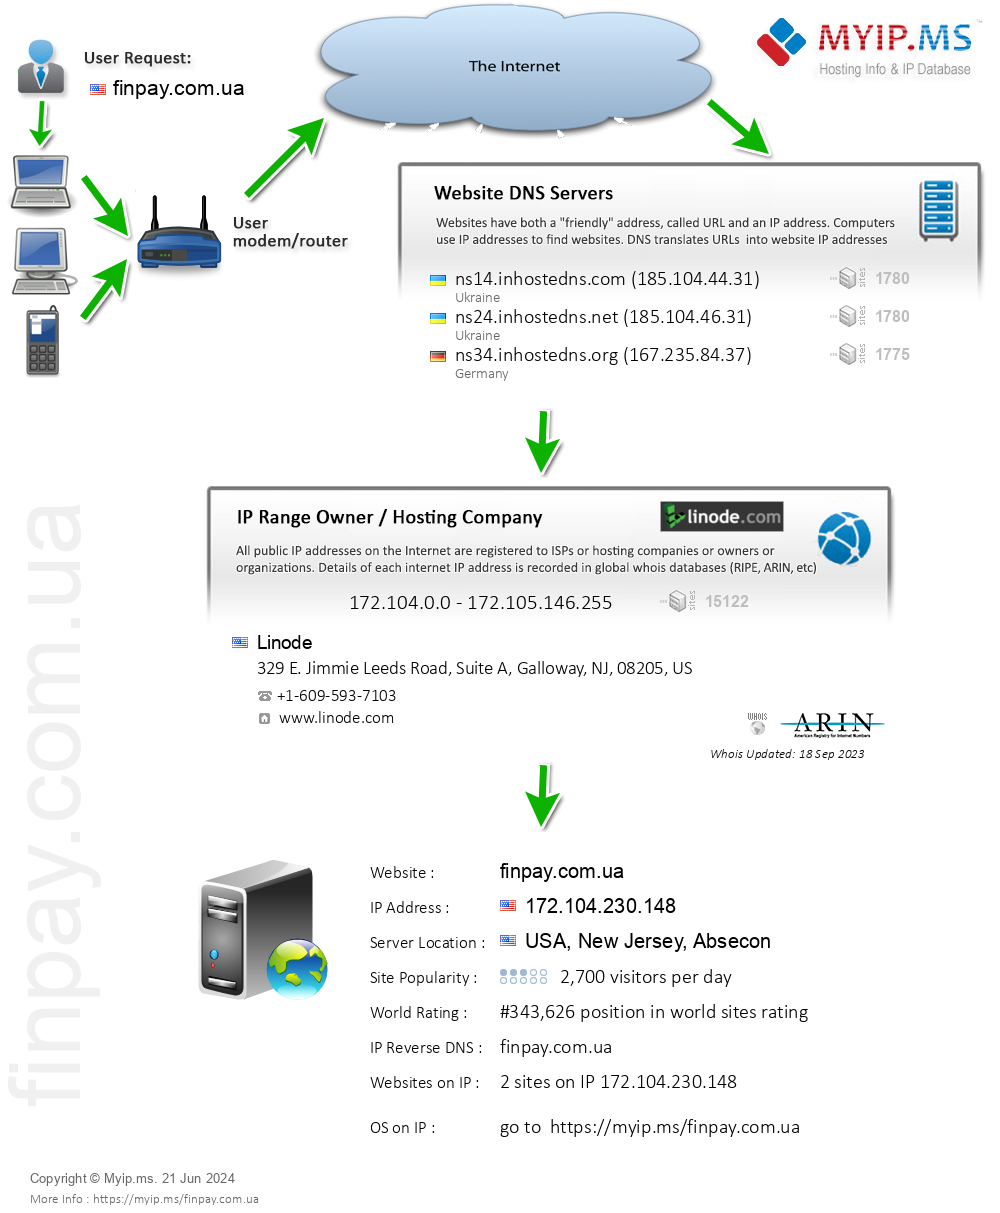 Finpay.com.ua - Website Hosting Visual IP Diagram